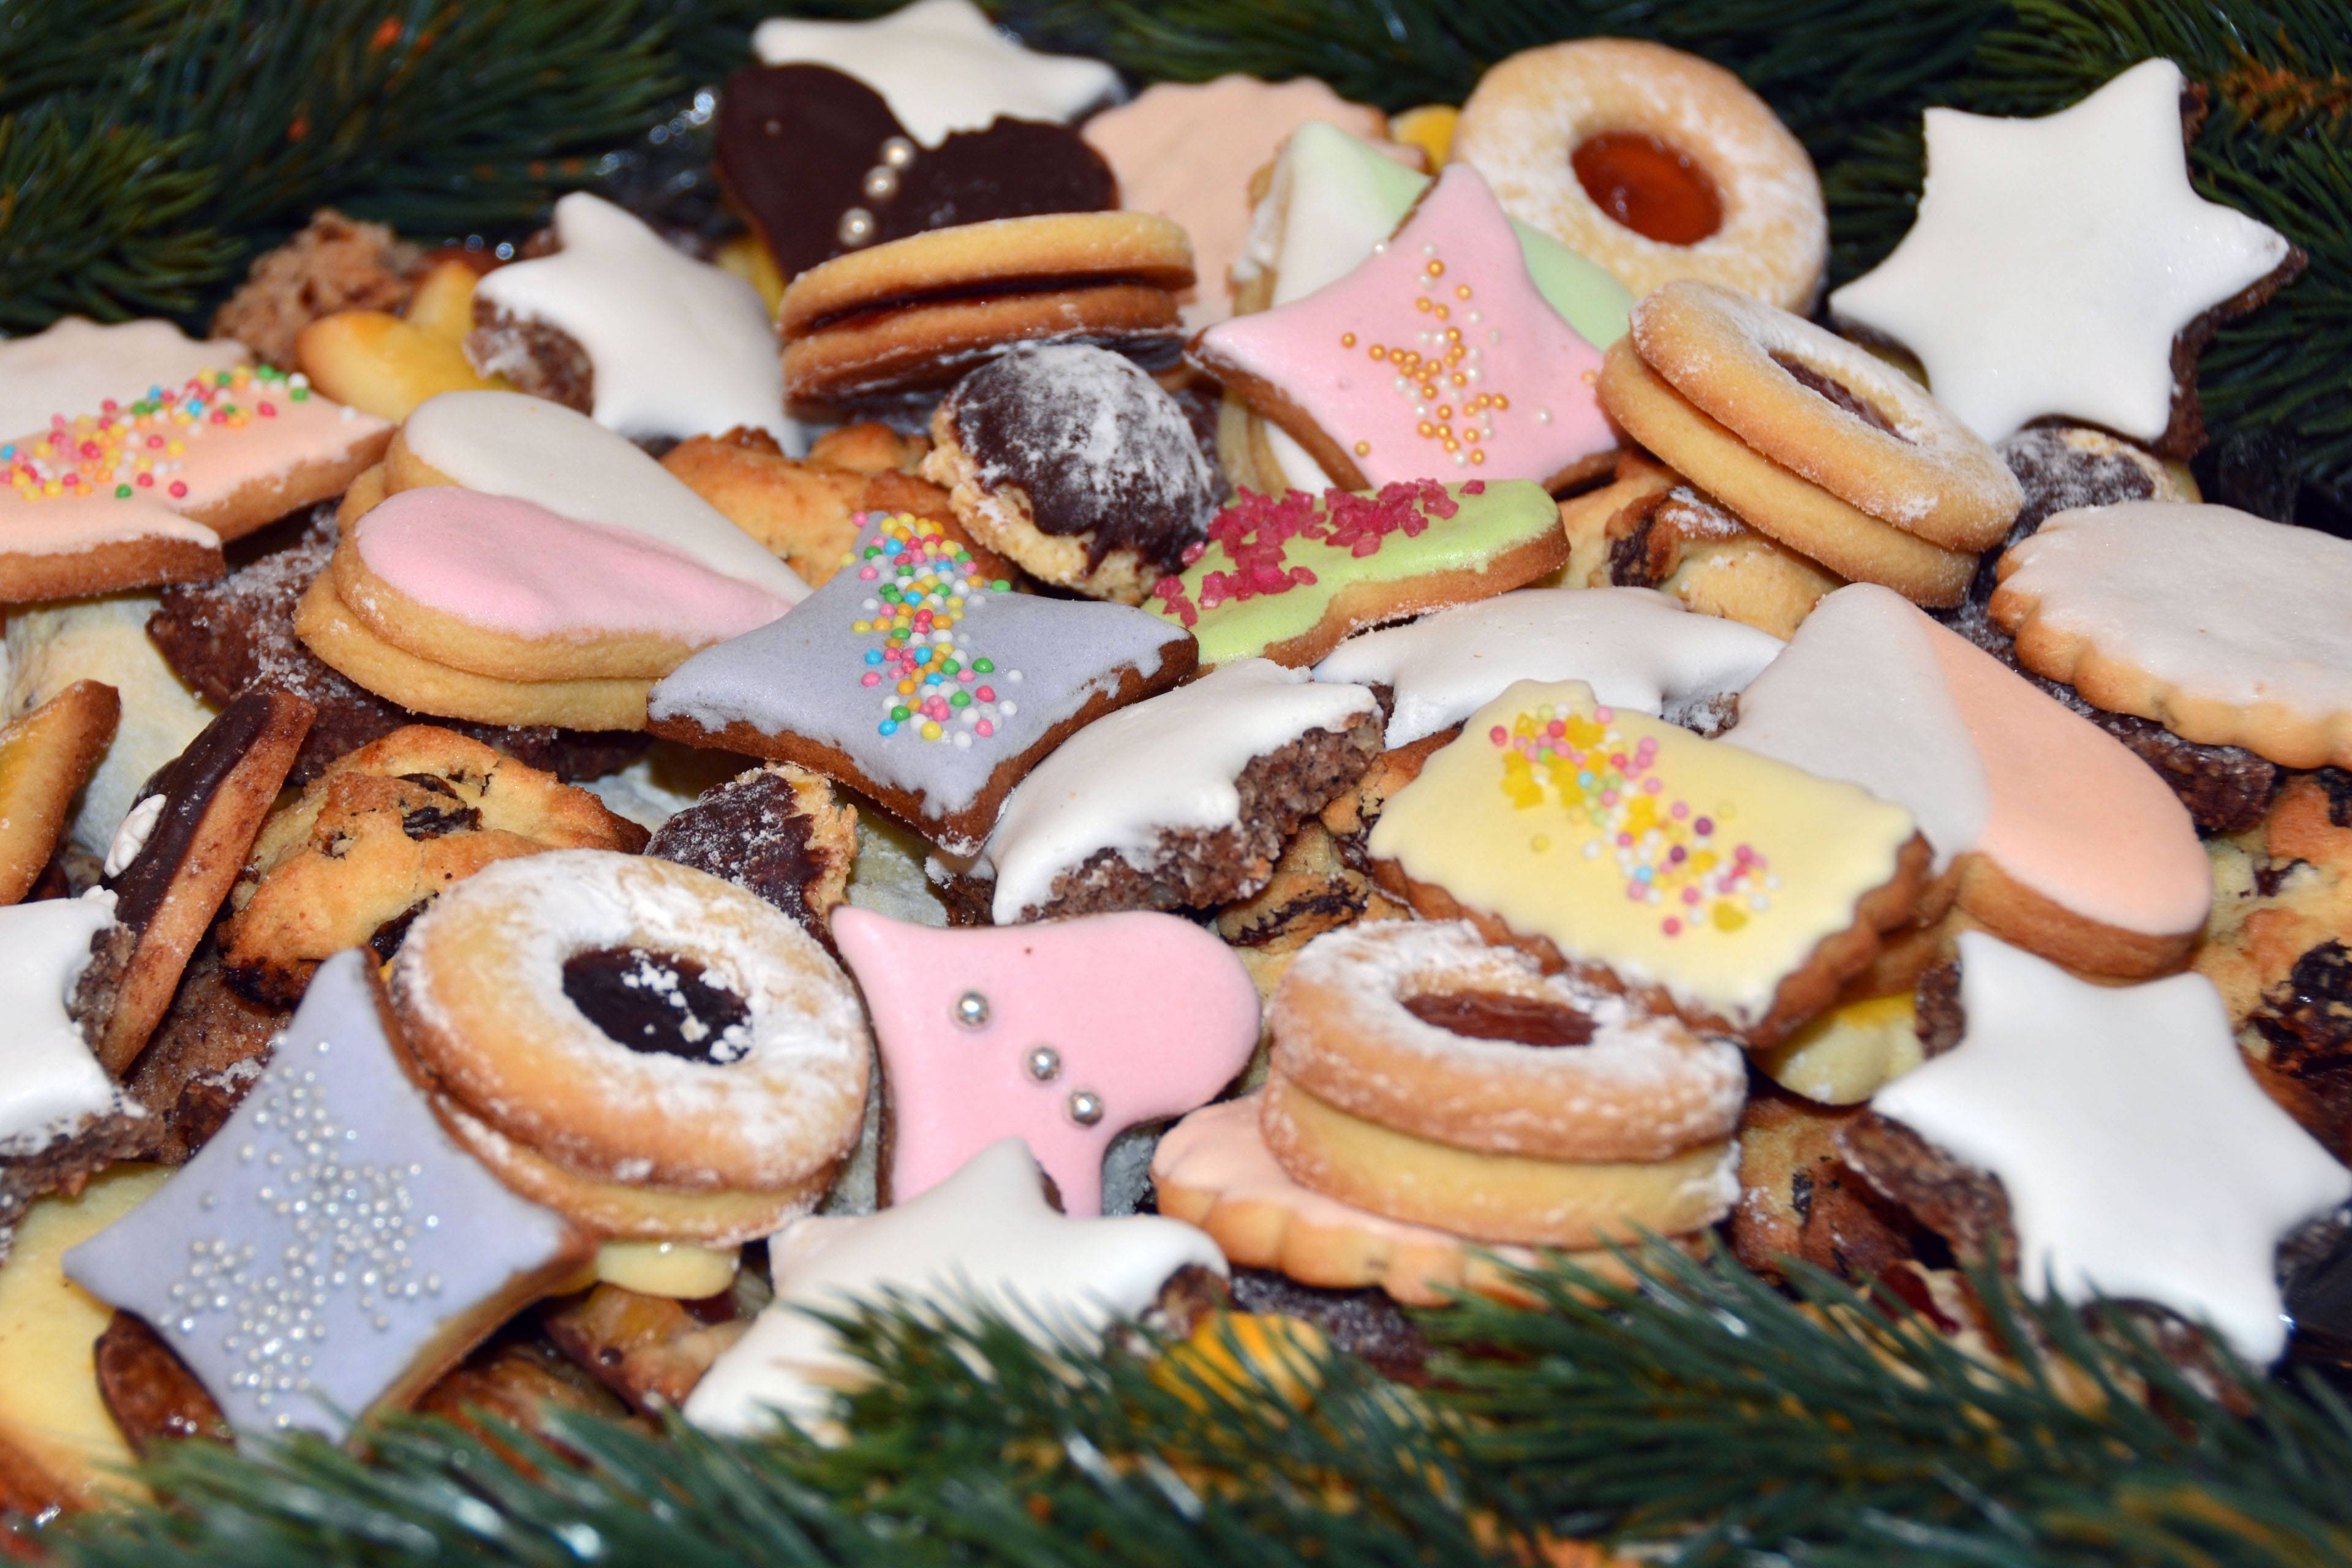 Лучшее новогоднее печенье / 5 самых удачных рецептов – статья из рубрики "как готовить" на food.ru